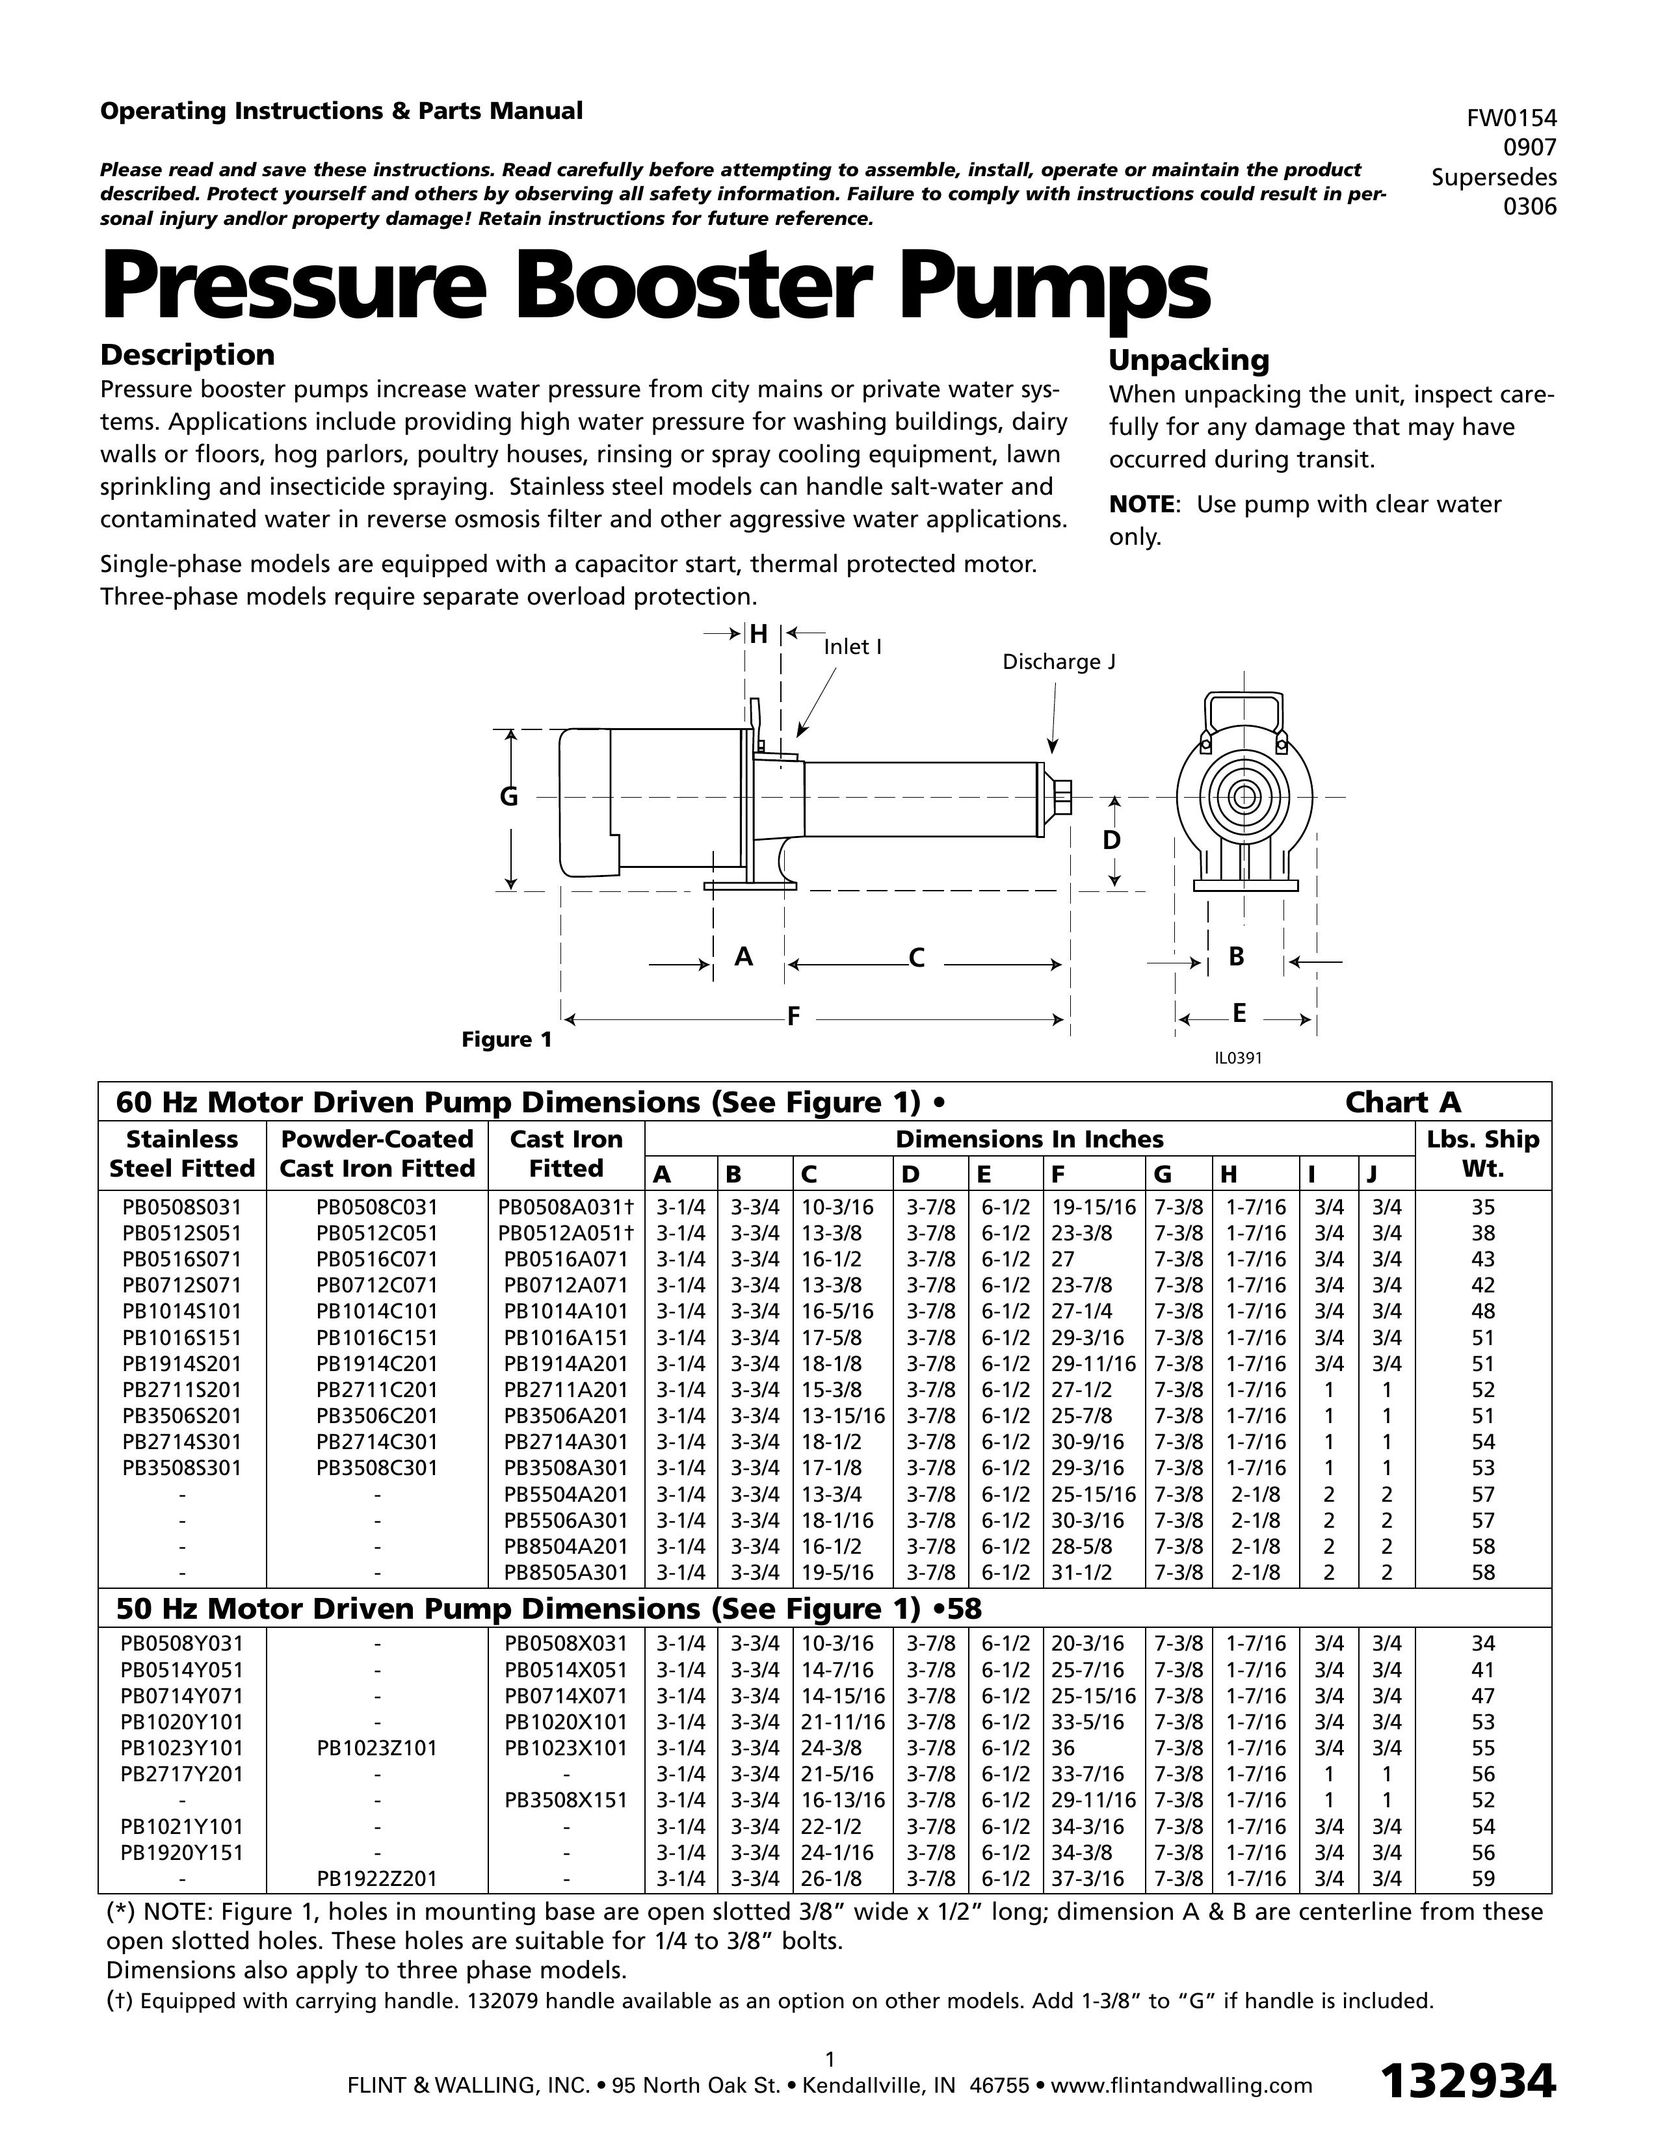 HP (Hewlett-Packard) FW0154 Water Pump User Manual